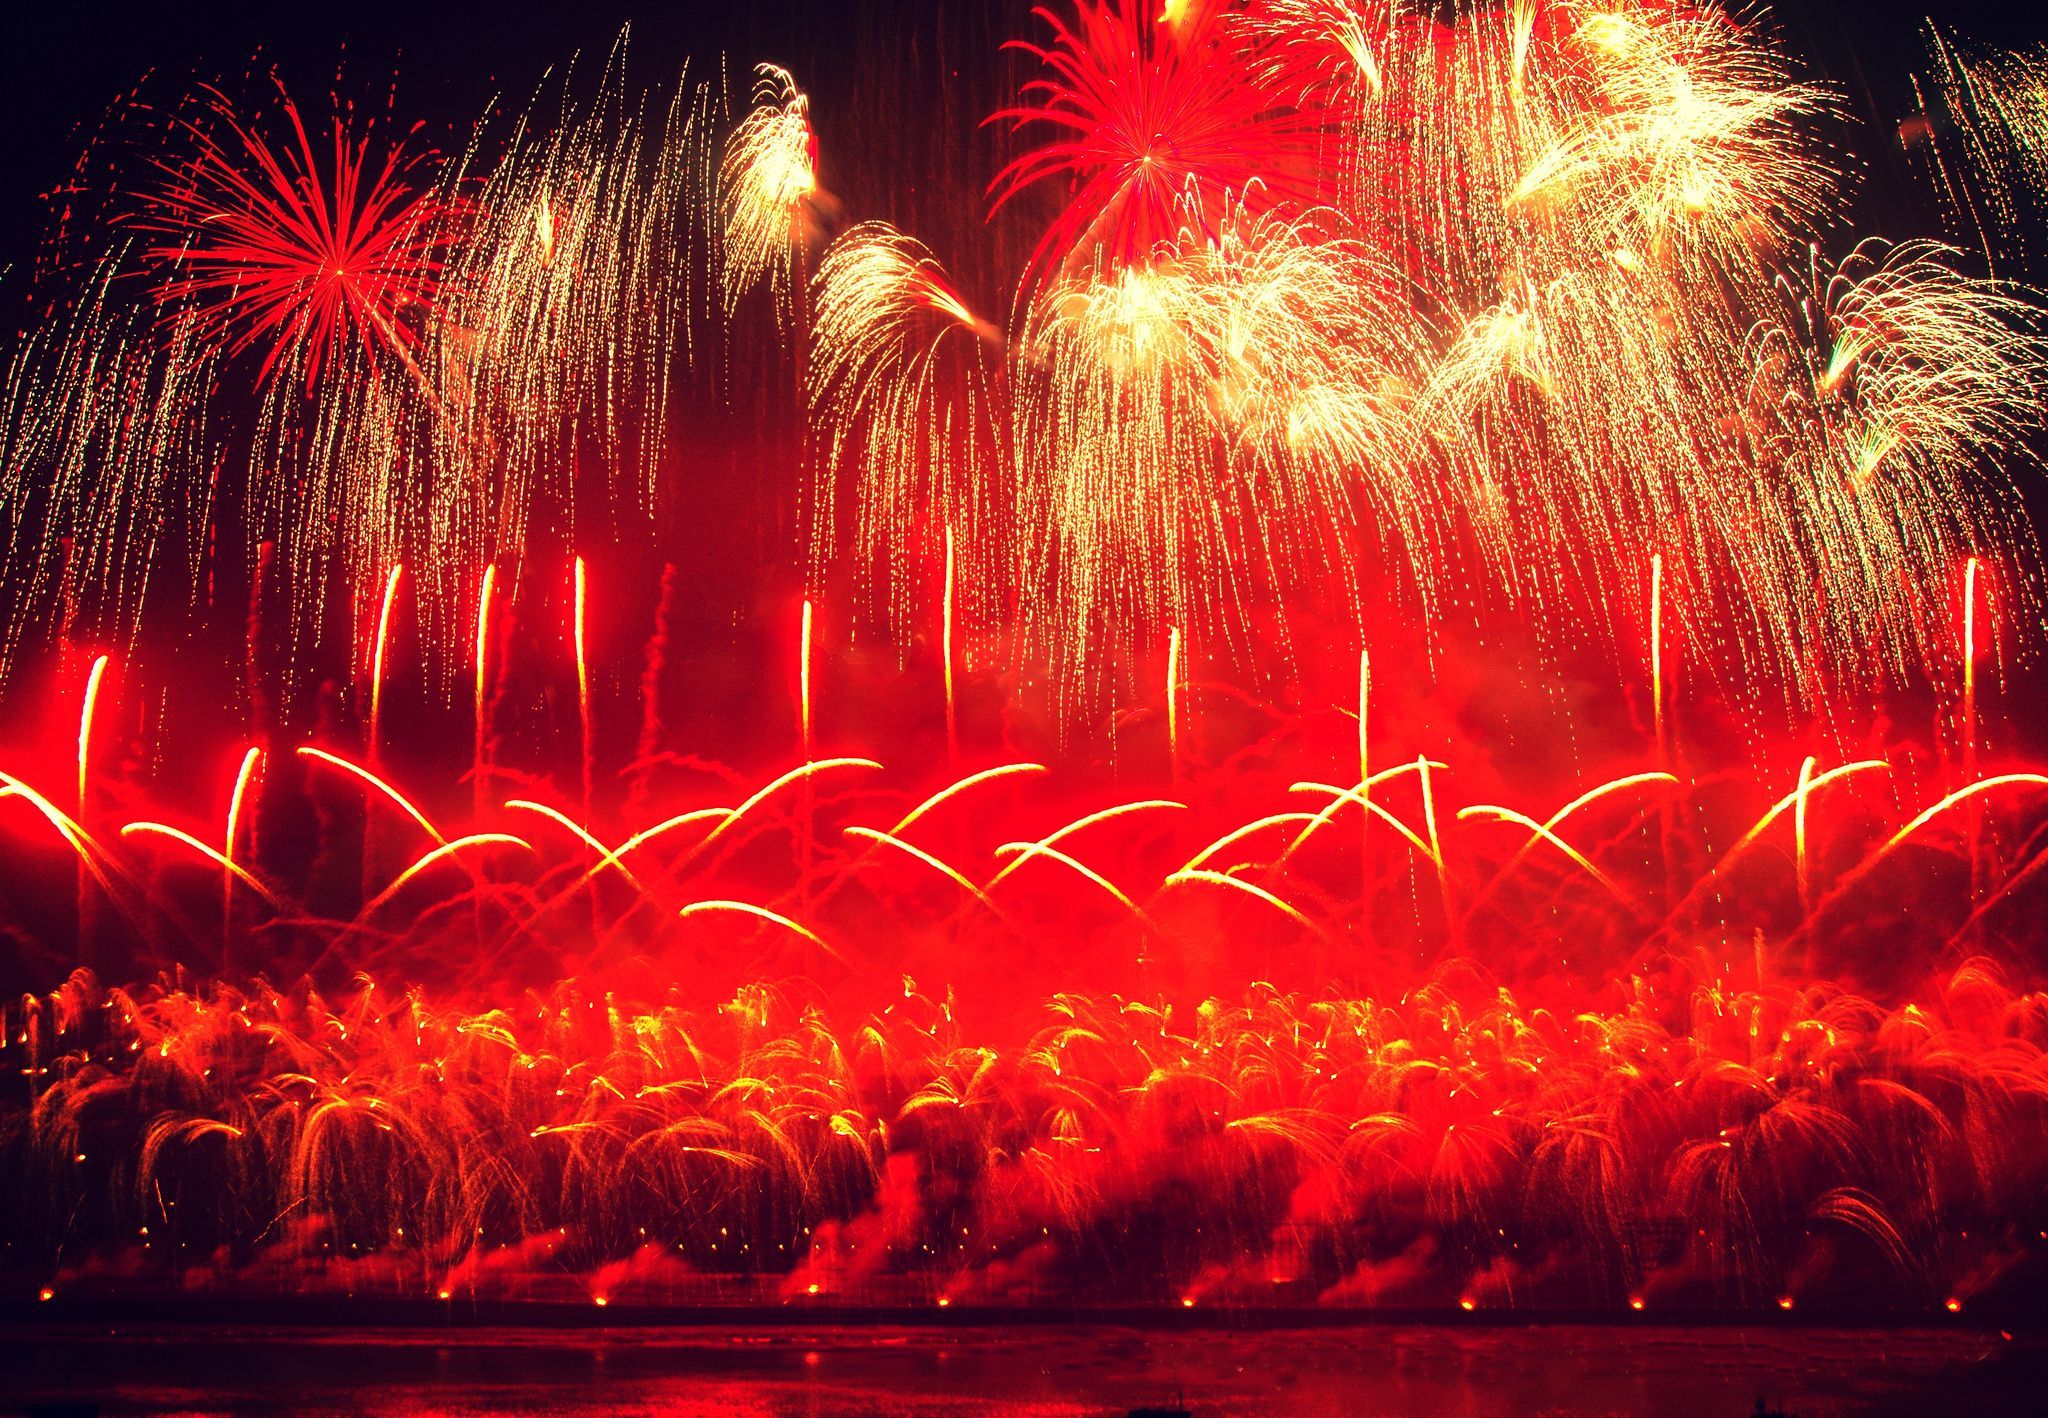 Chinese New Year Firework Display #China. Chinese new year fireworks, New year fireworks, Fireworks image